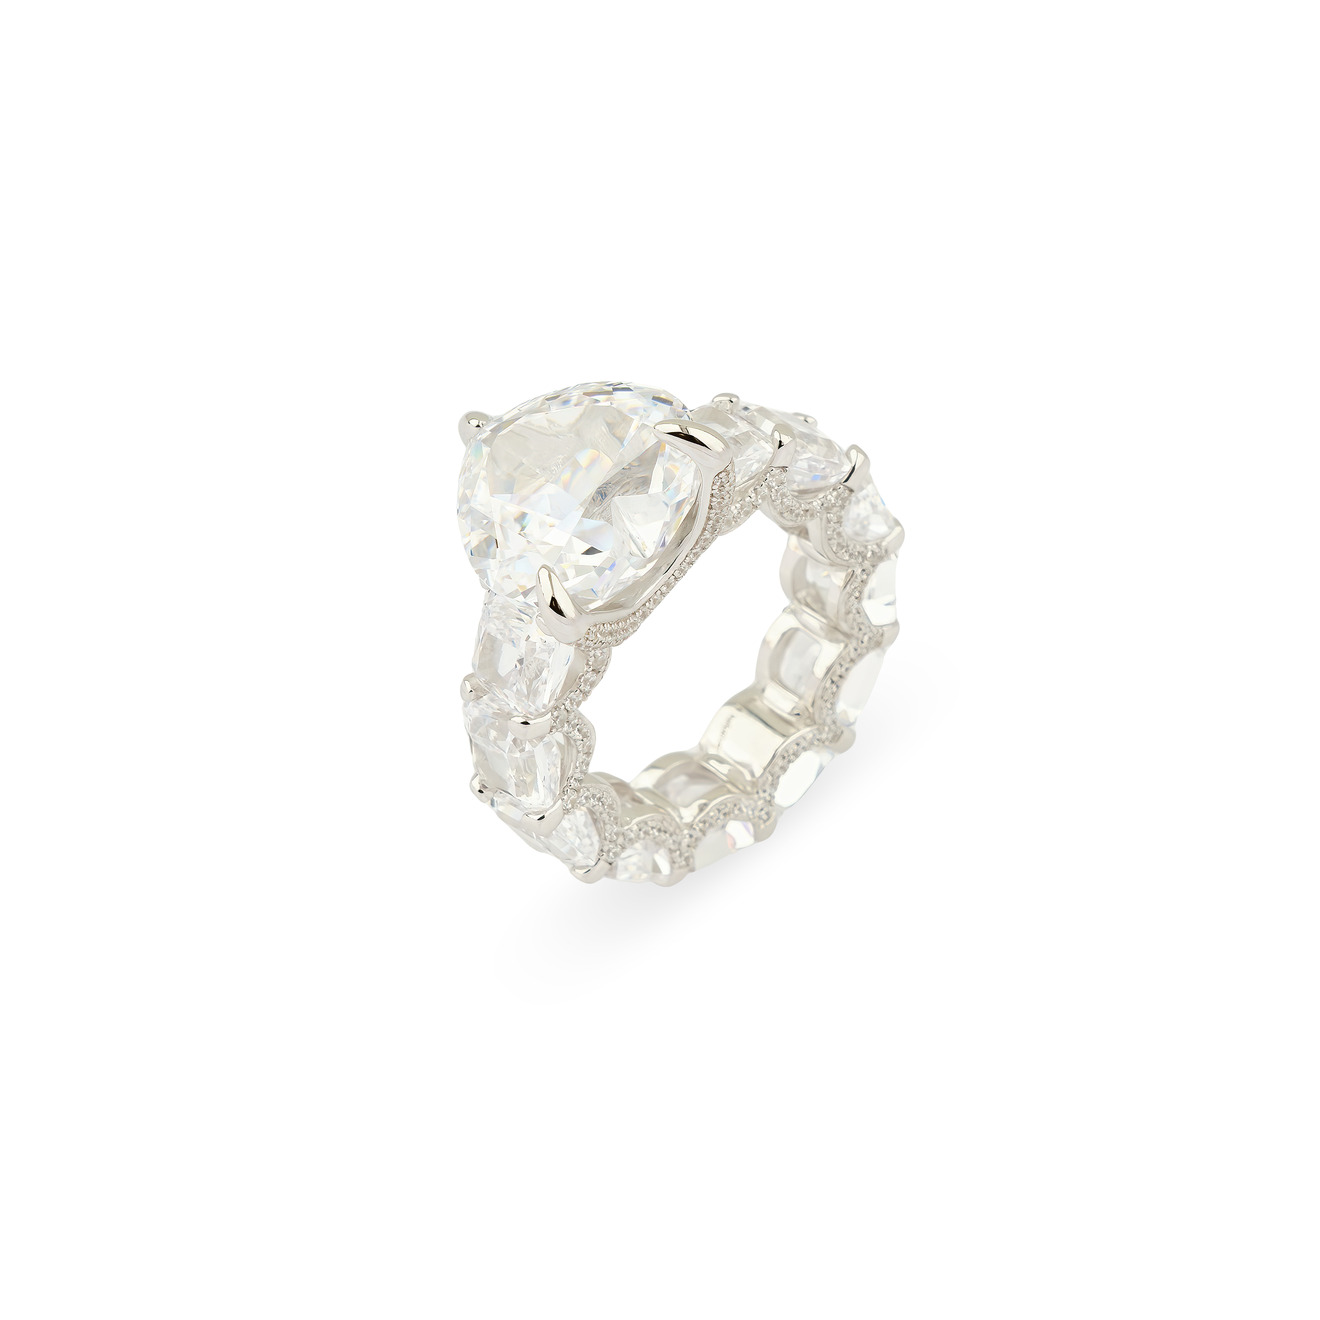 Holy Silver Кольцо из серебра с дорожкой из белых кристаллов и крупным белым кристаллом сердце цена и фото